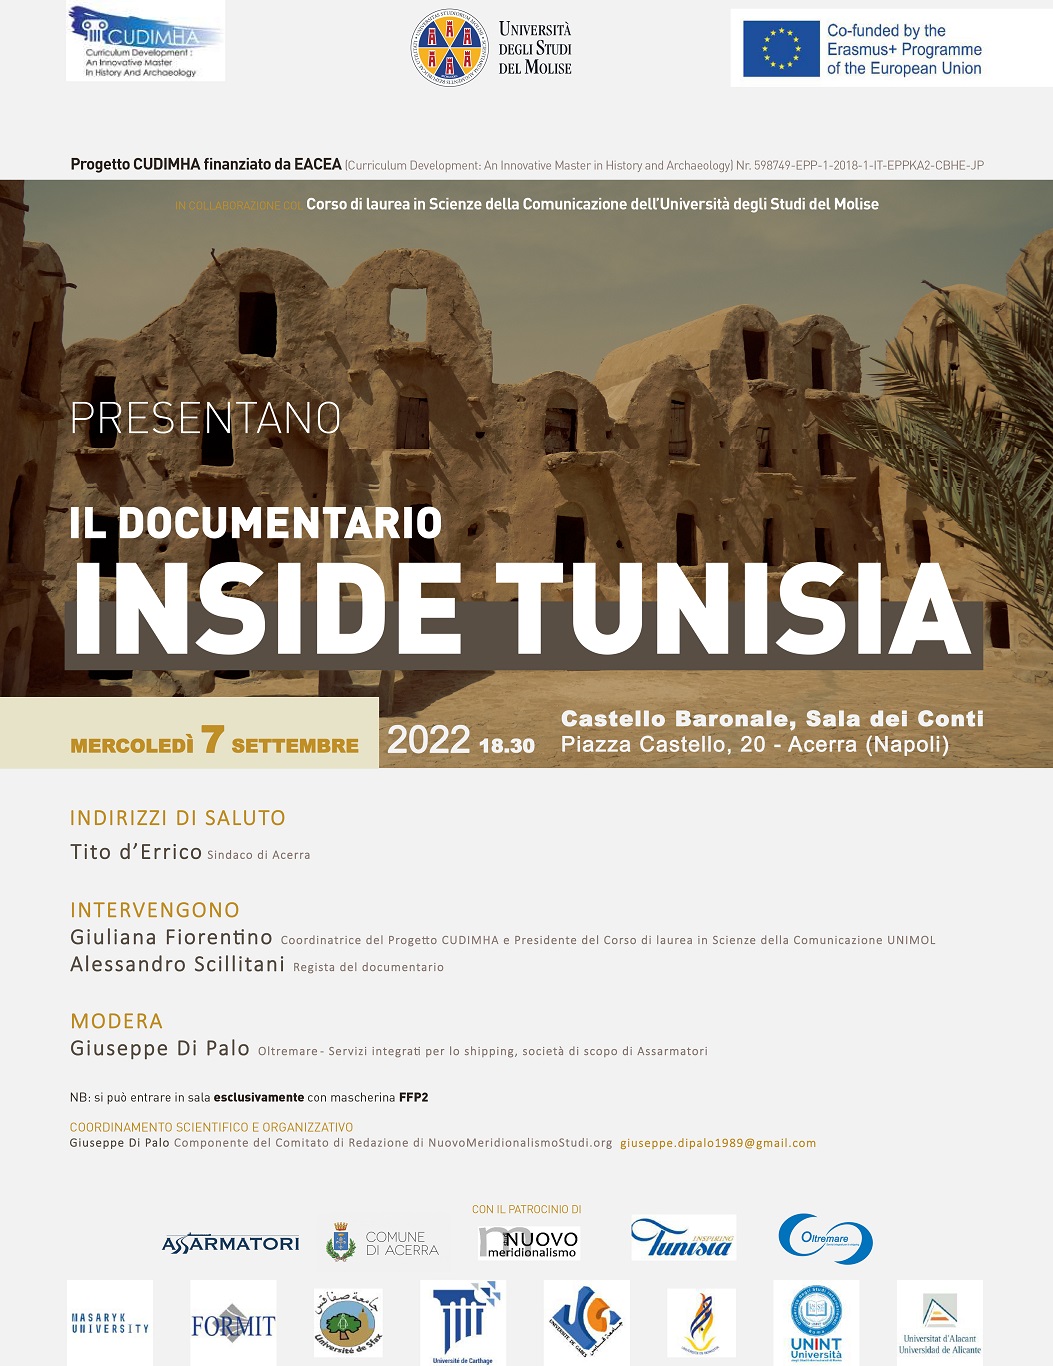 Acerra: presentazione documentario “Inside Tunisia” del regista Alessandro Scillitani a Castello Baronale